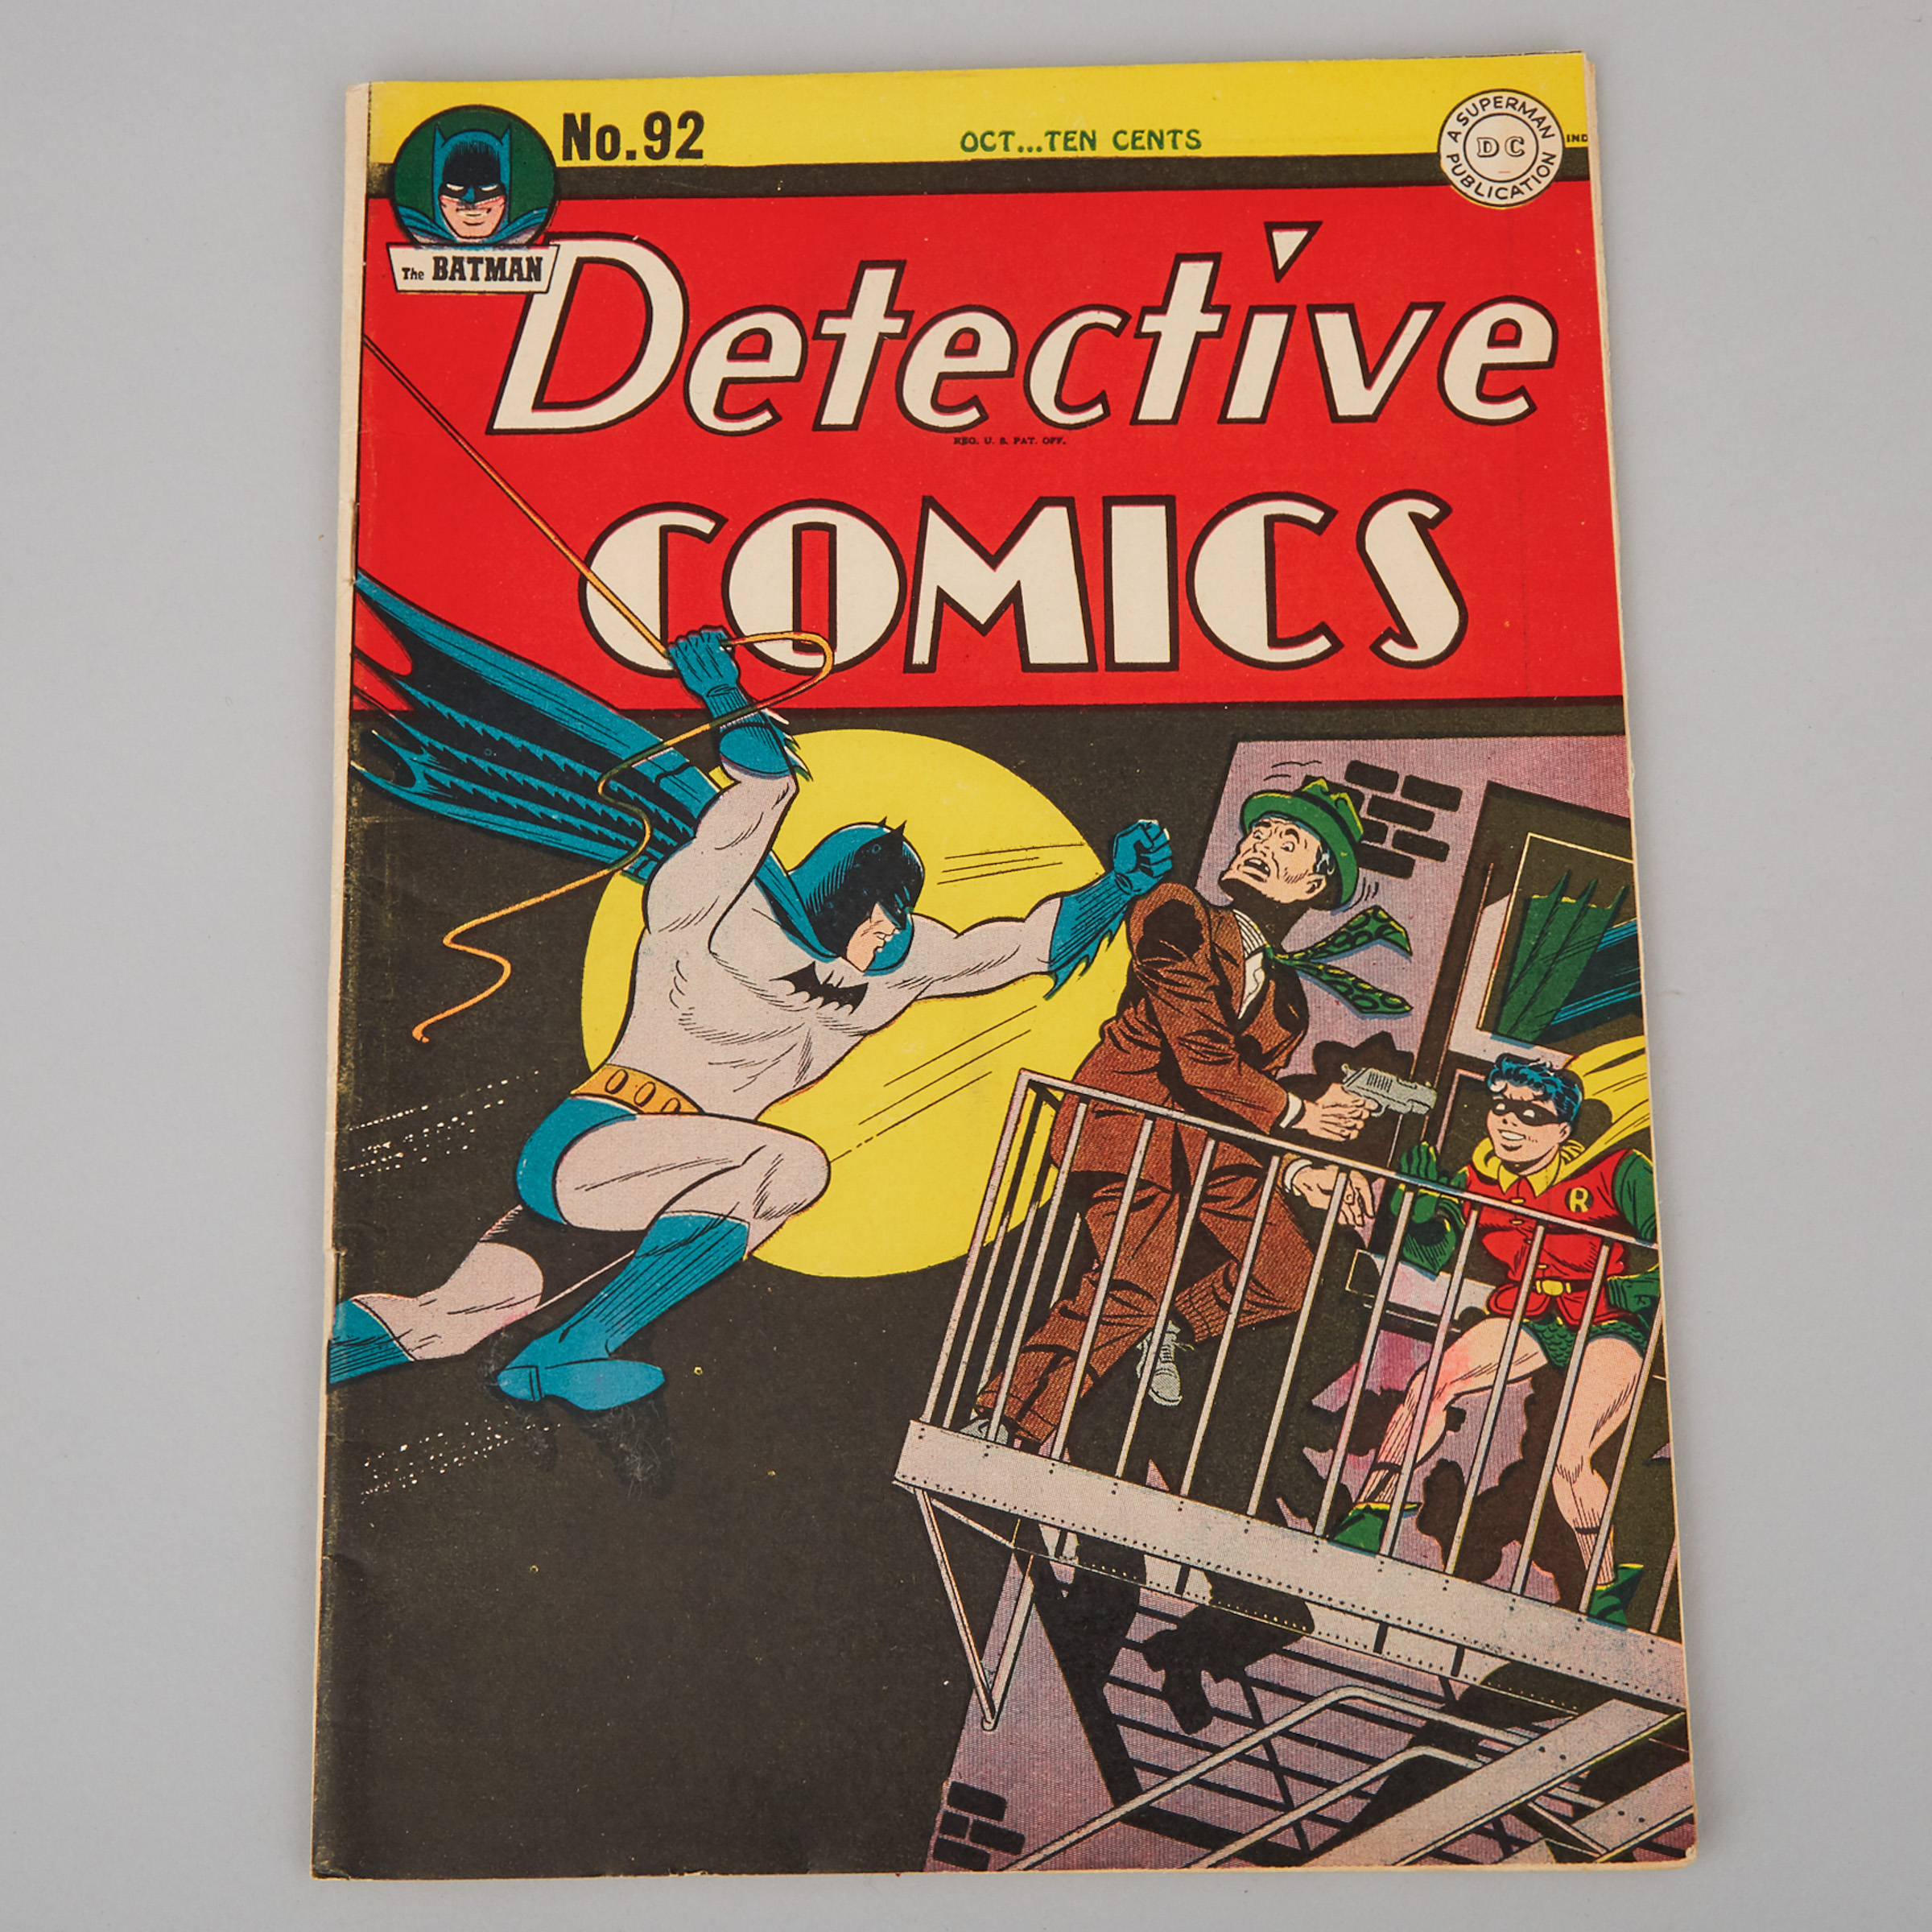 Superman DC 'Detective Comics' No. 92, October, 1944